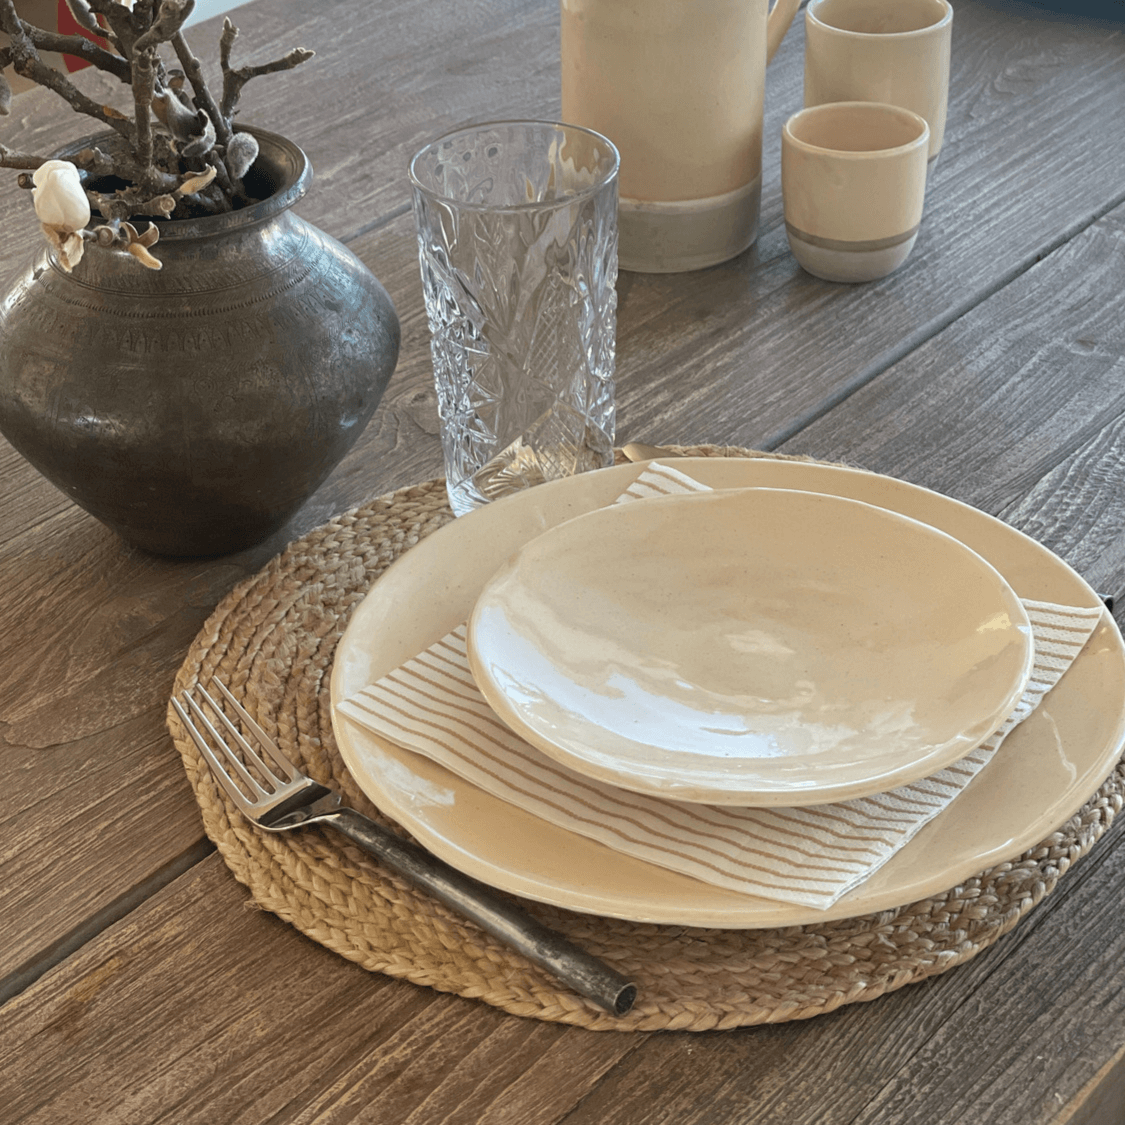 MIXED tallerken i keramik - frokost (2. sortering)